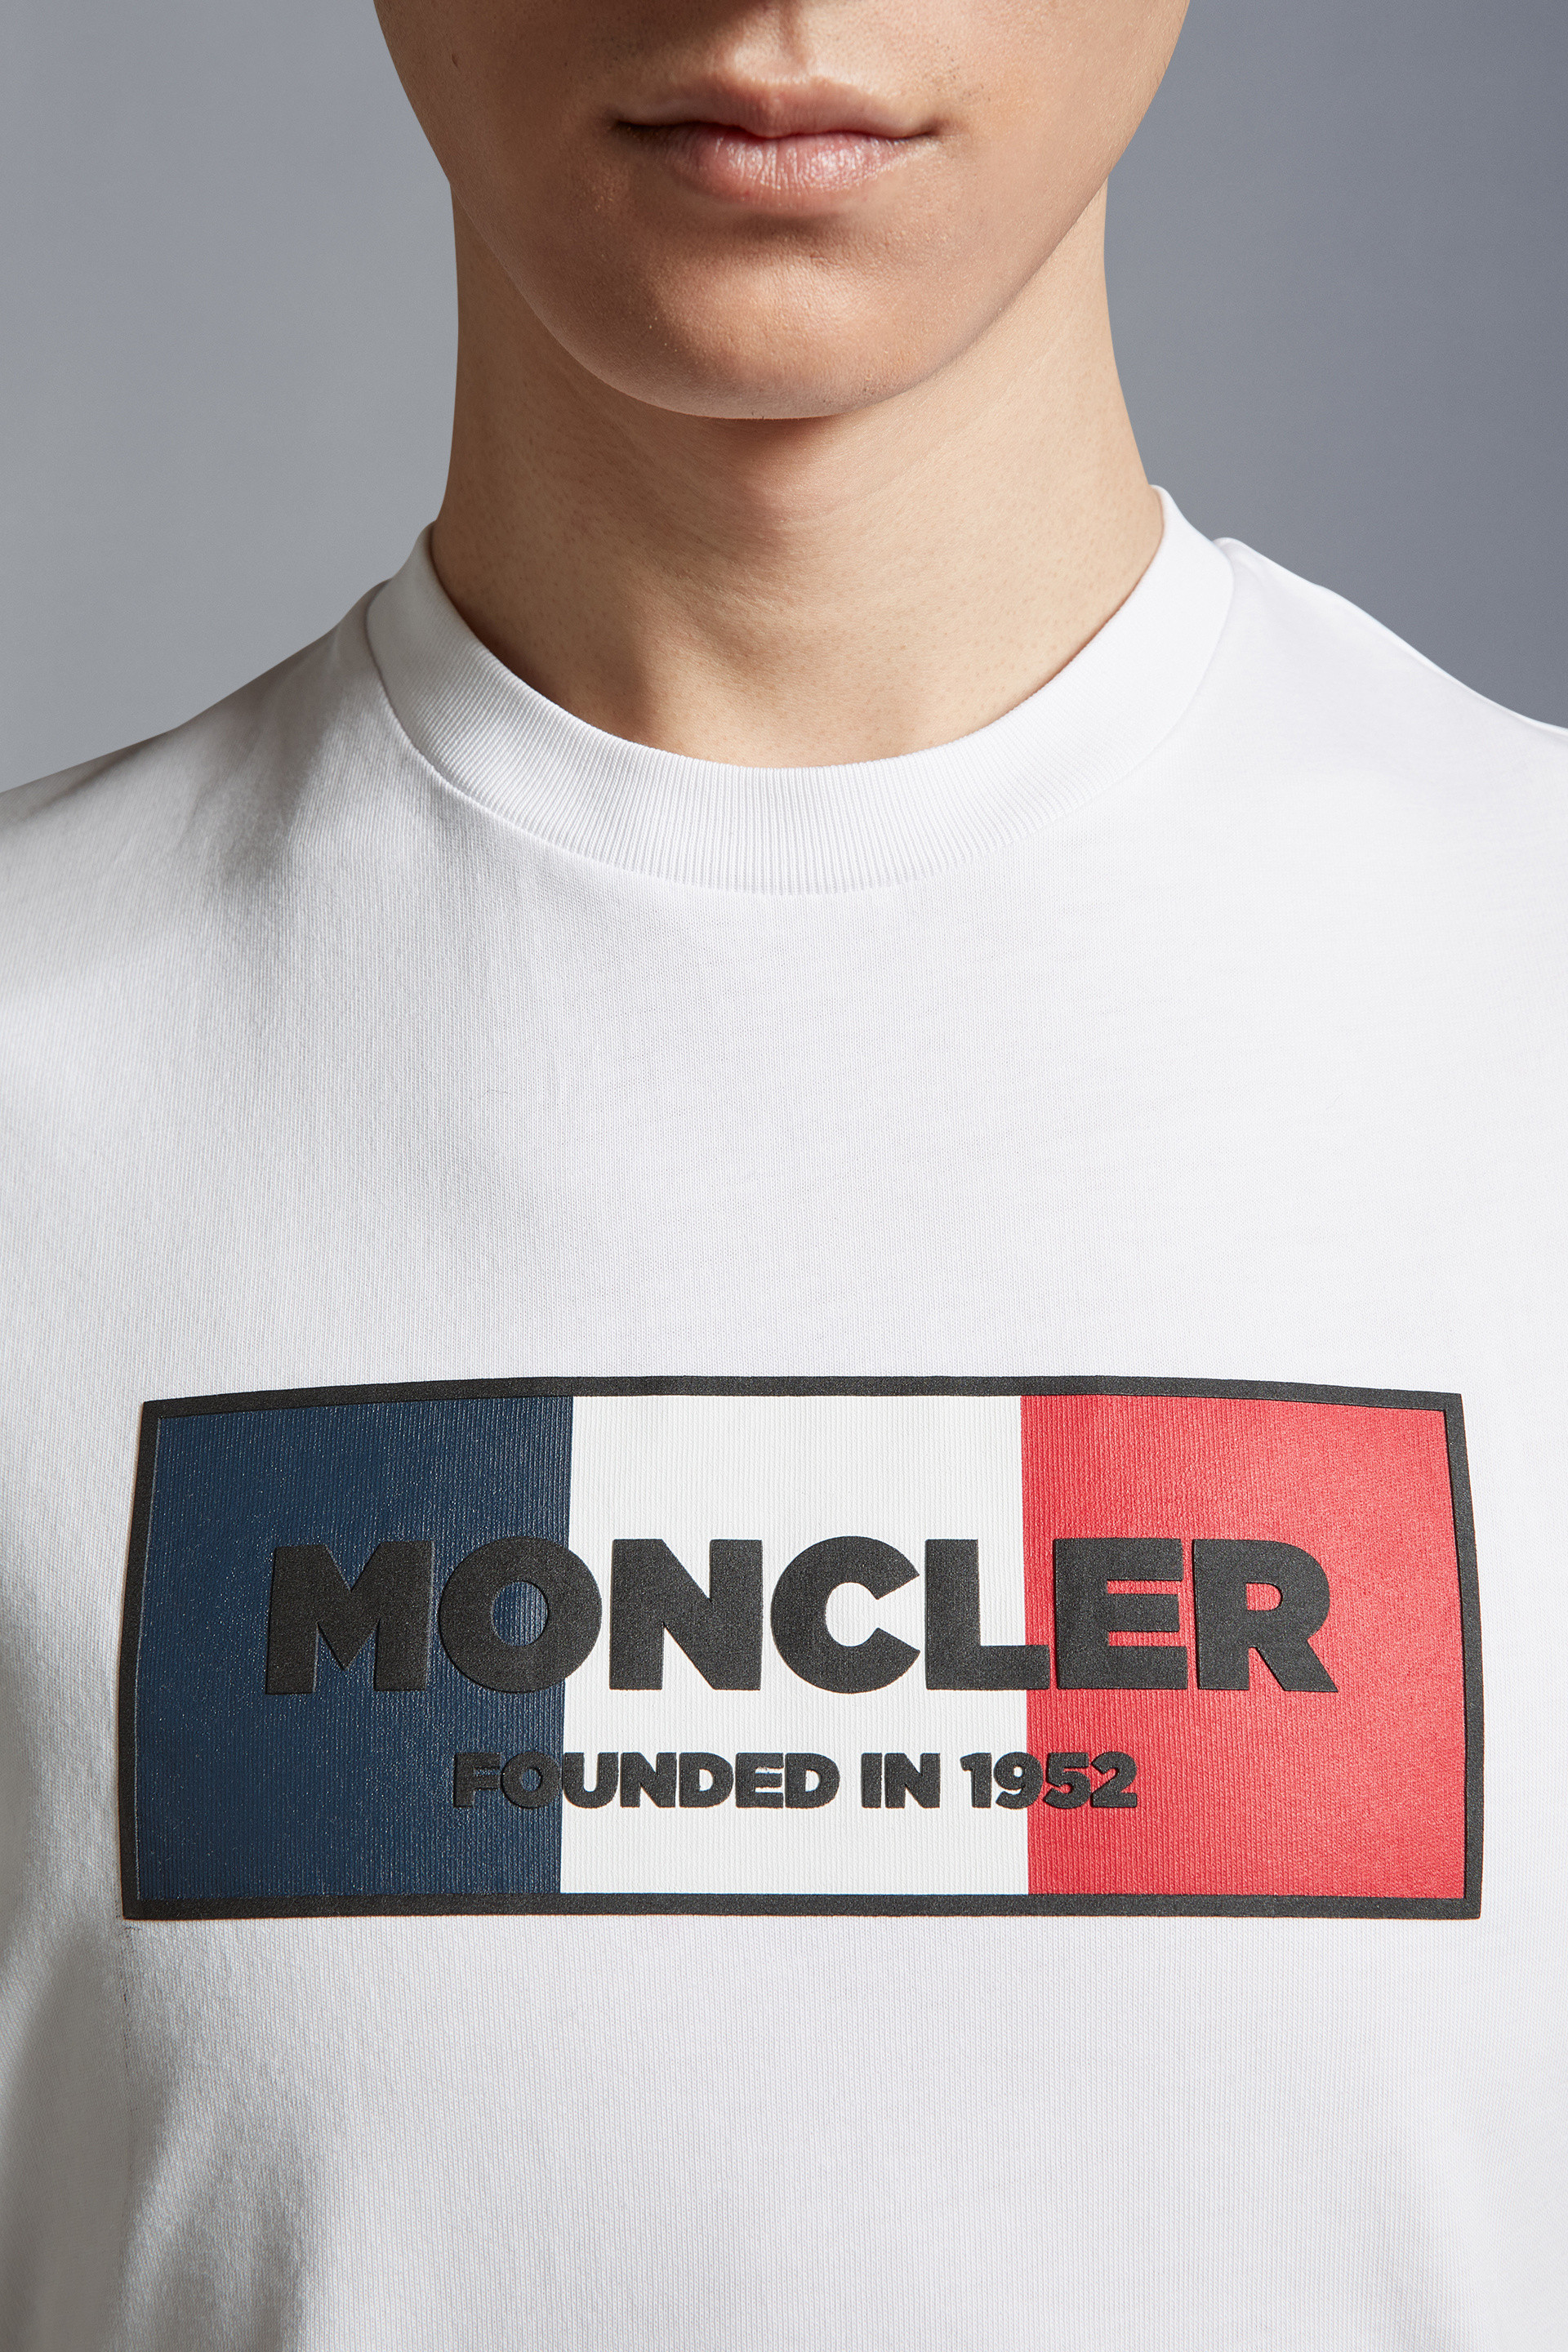 MONCLER メンズTシャツ